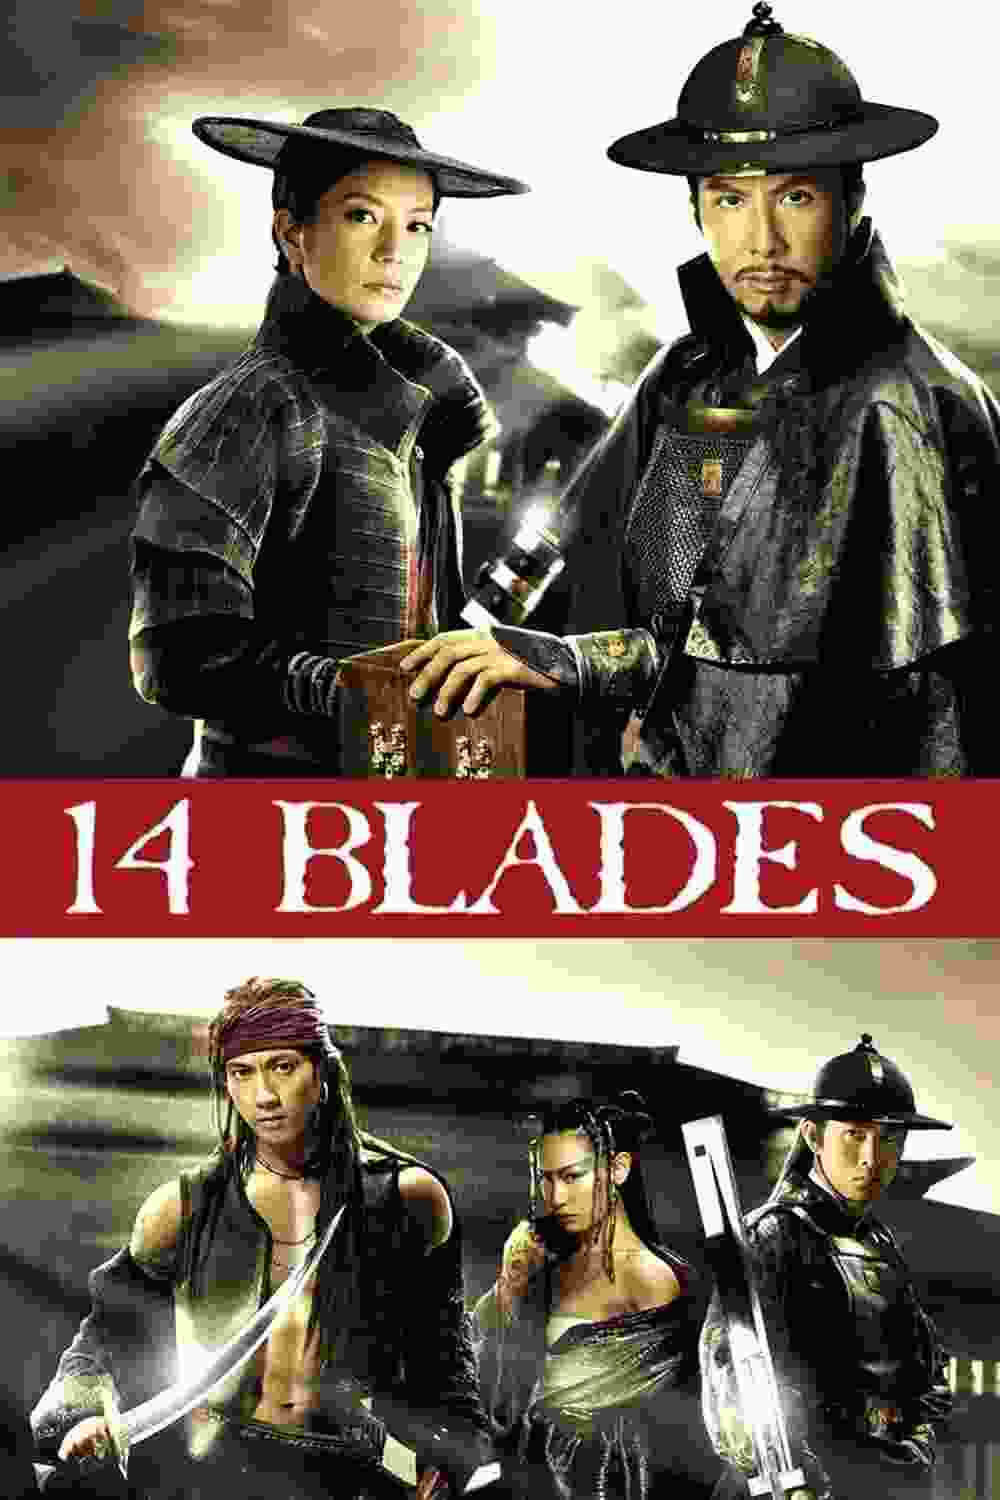 14 Blades (2010) Donnie Yen